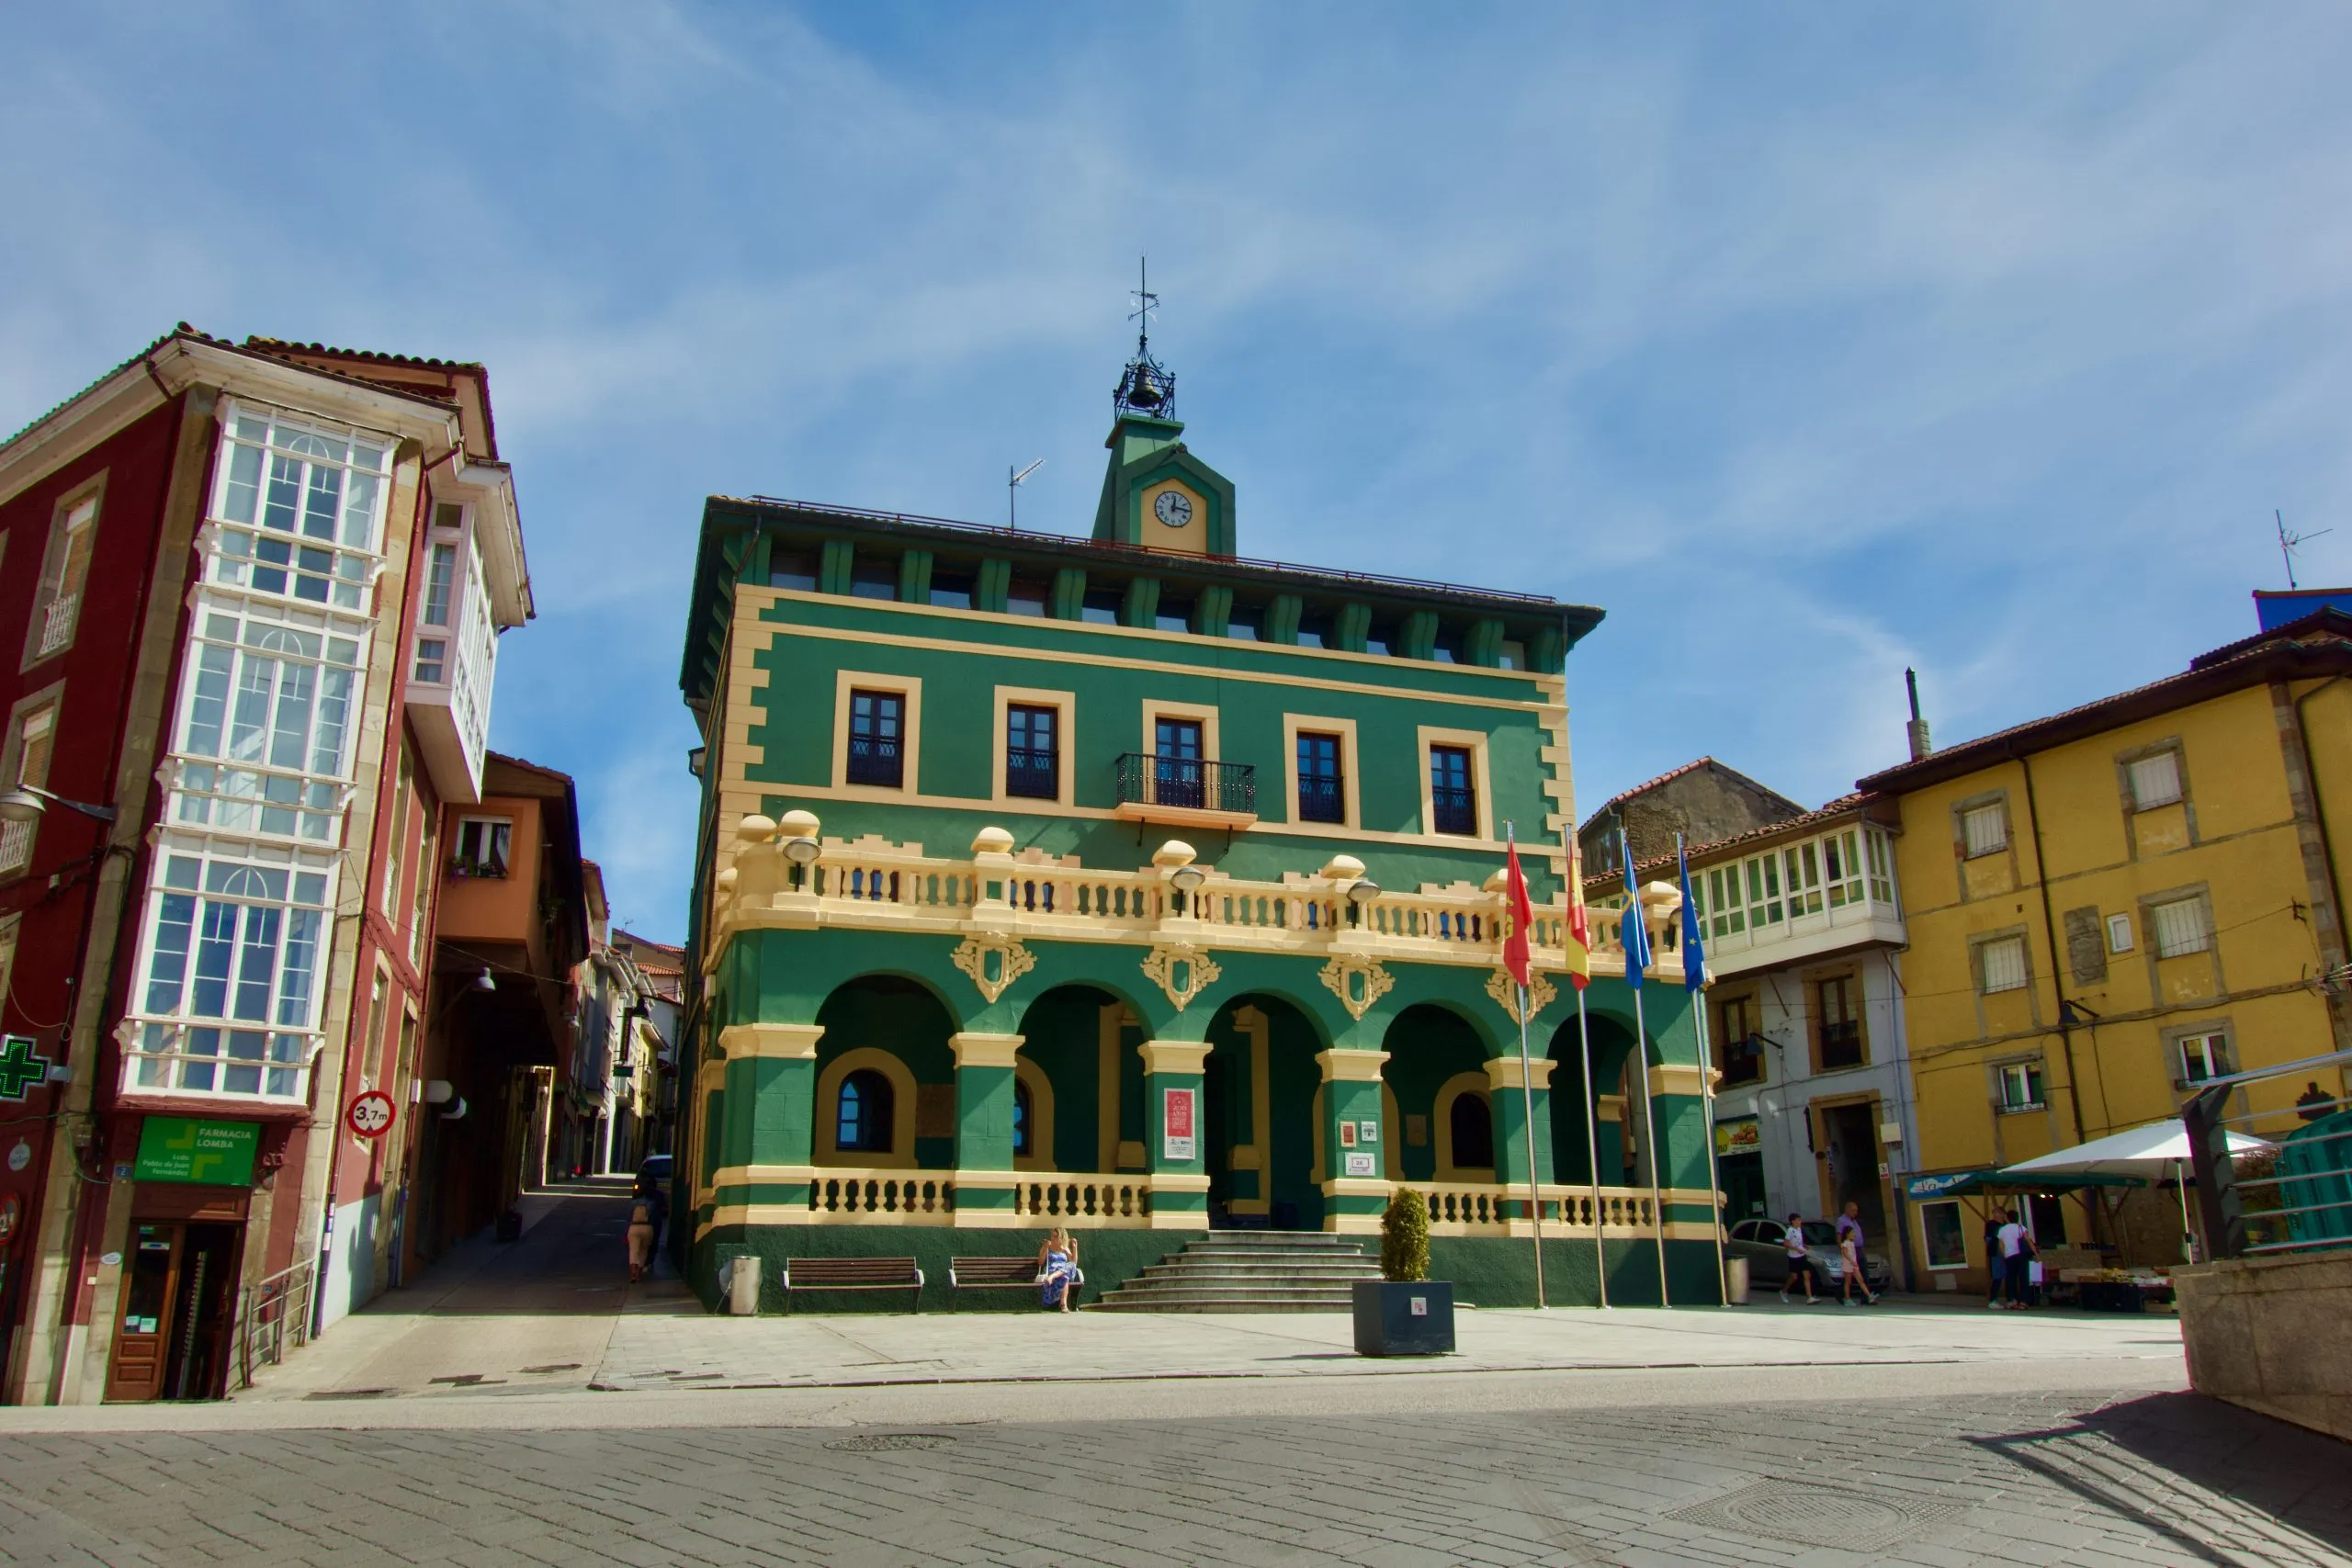 Tineo town in Spain on Camino Primitivo de Santiago de Compostela way.